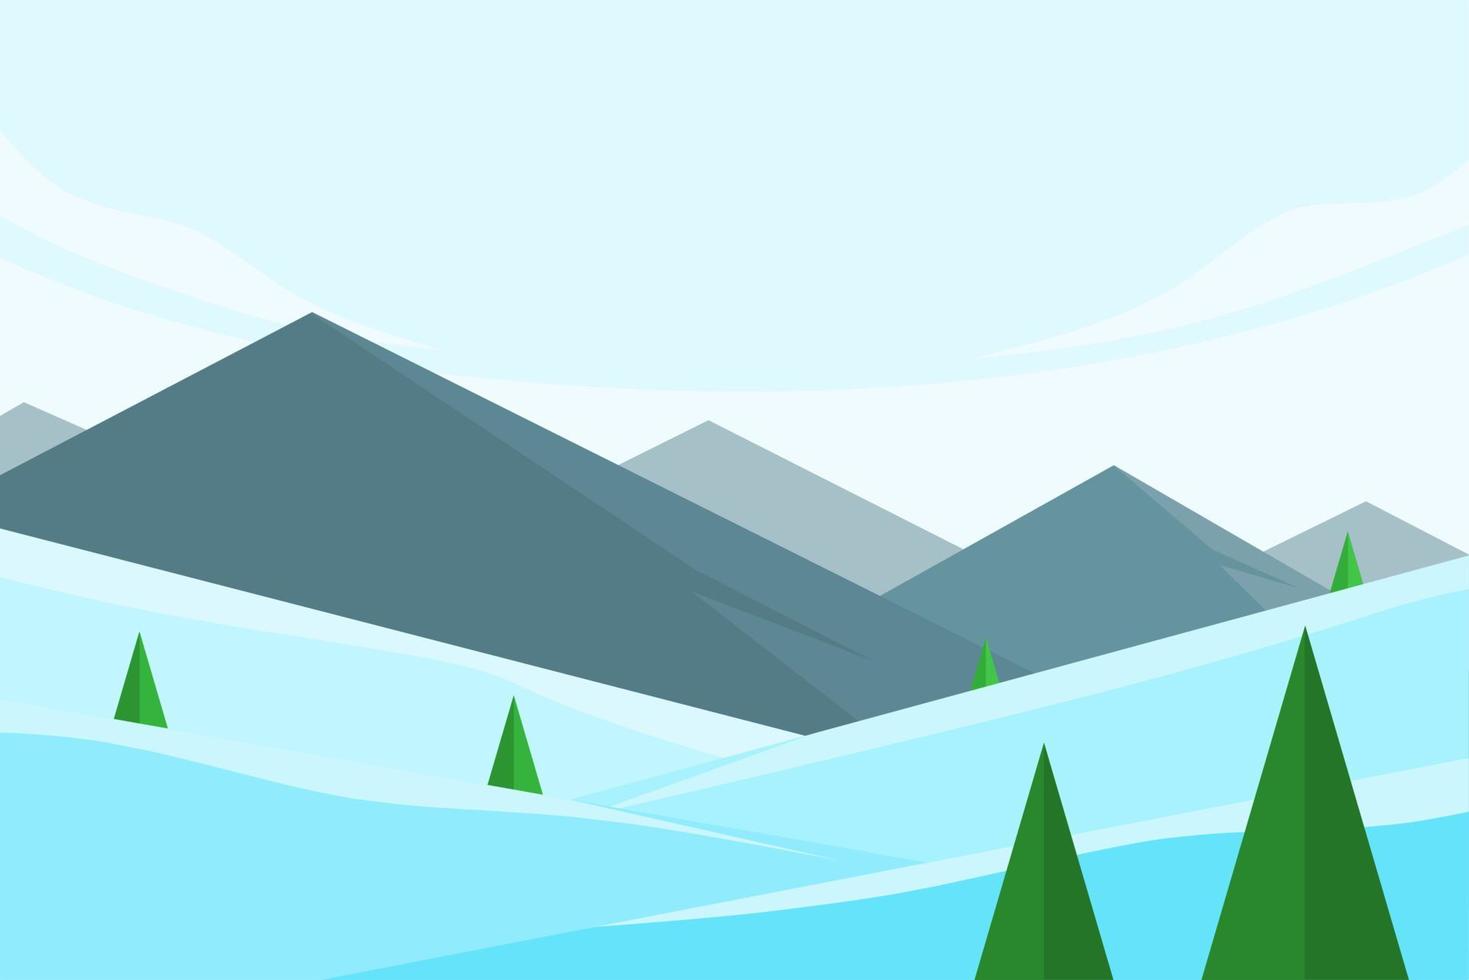 ilustración plana de paisaje invernal con pinos y montañas rocosas vector